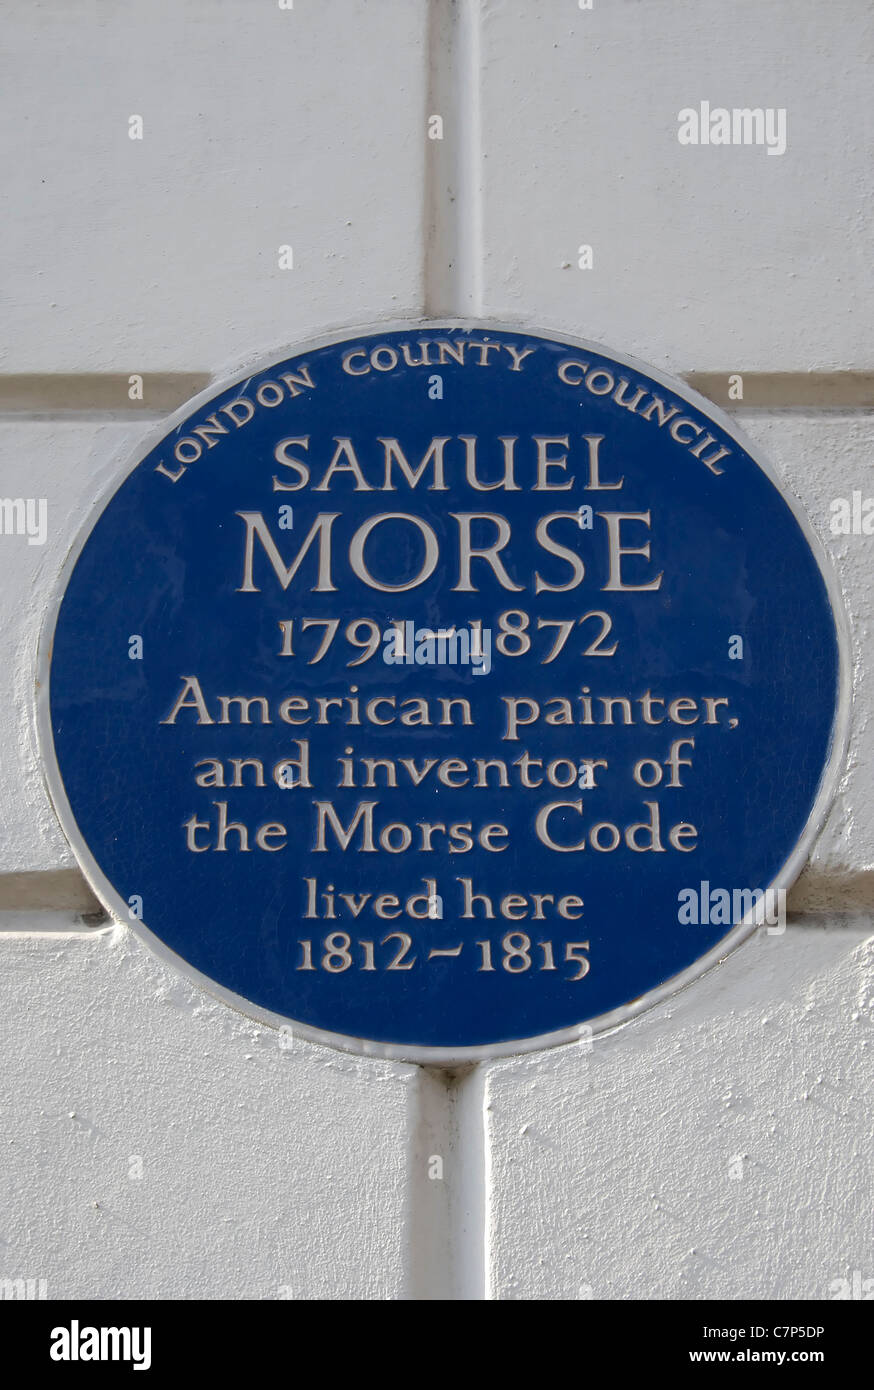 London County council targa blu segnando un home di Samuel Morse, codice morse inventore e pittore, Cleveland Street, Londra Foto Stock